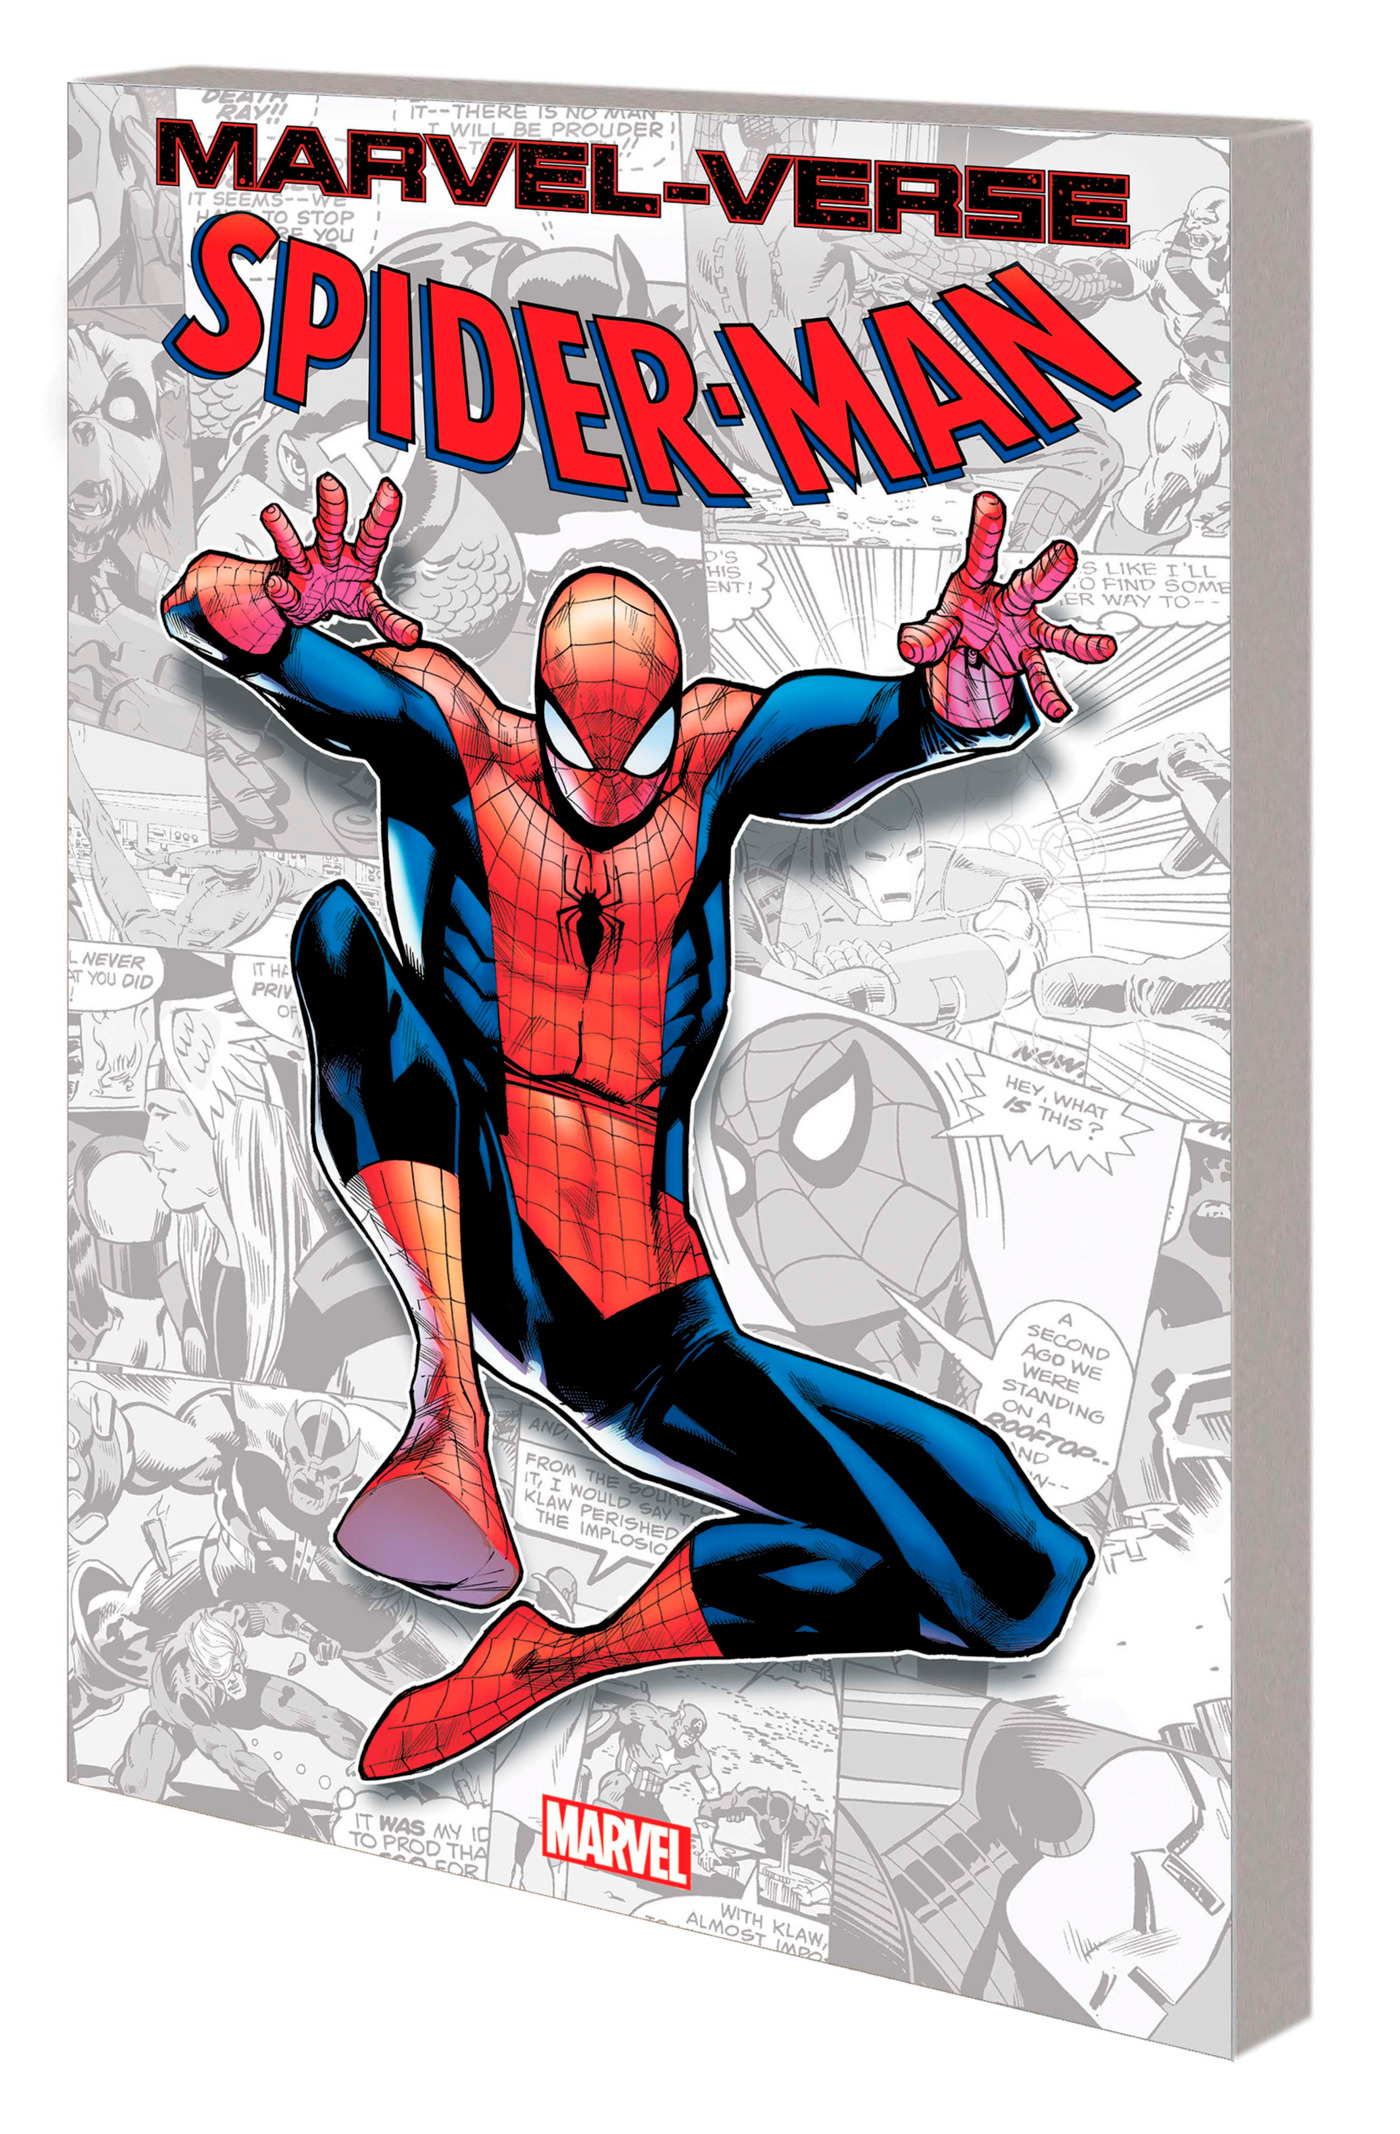 Marvel-Verse Graphic Novel Volume 15 Spider-Man